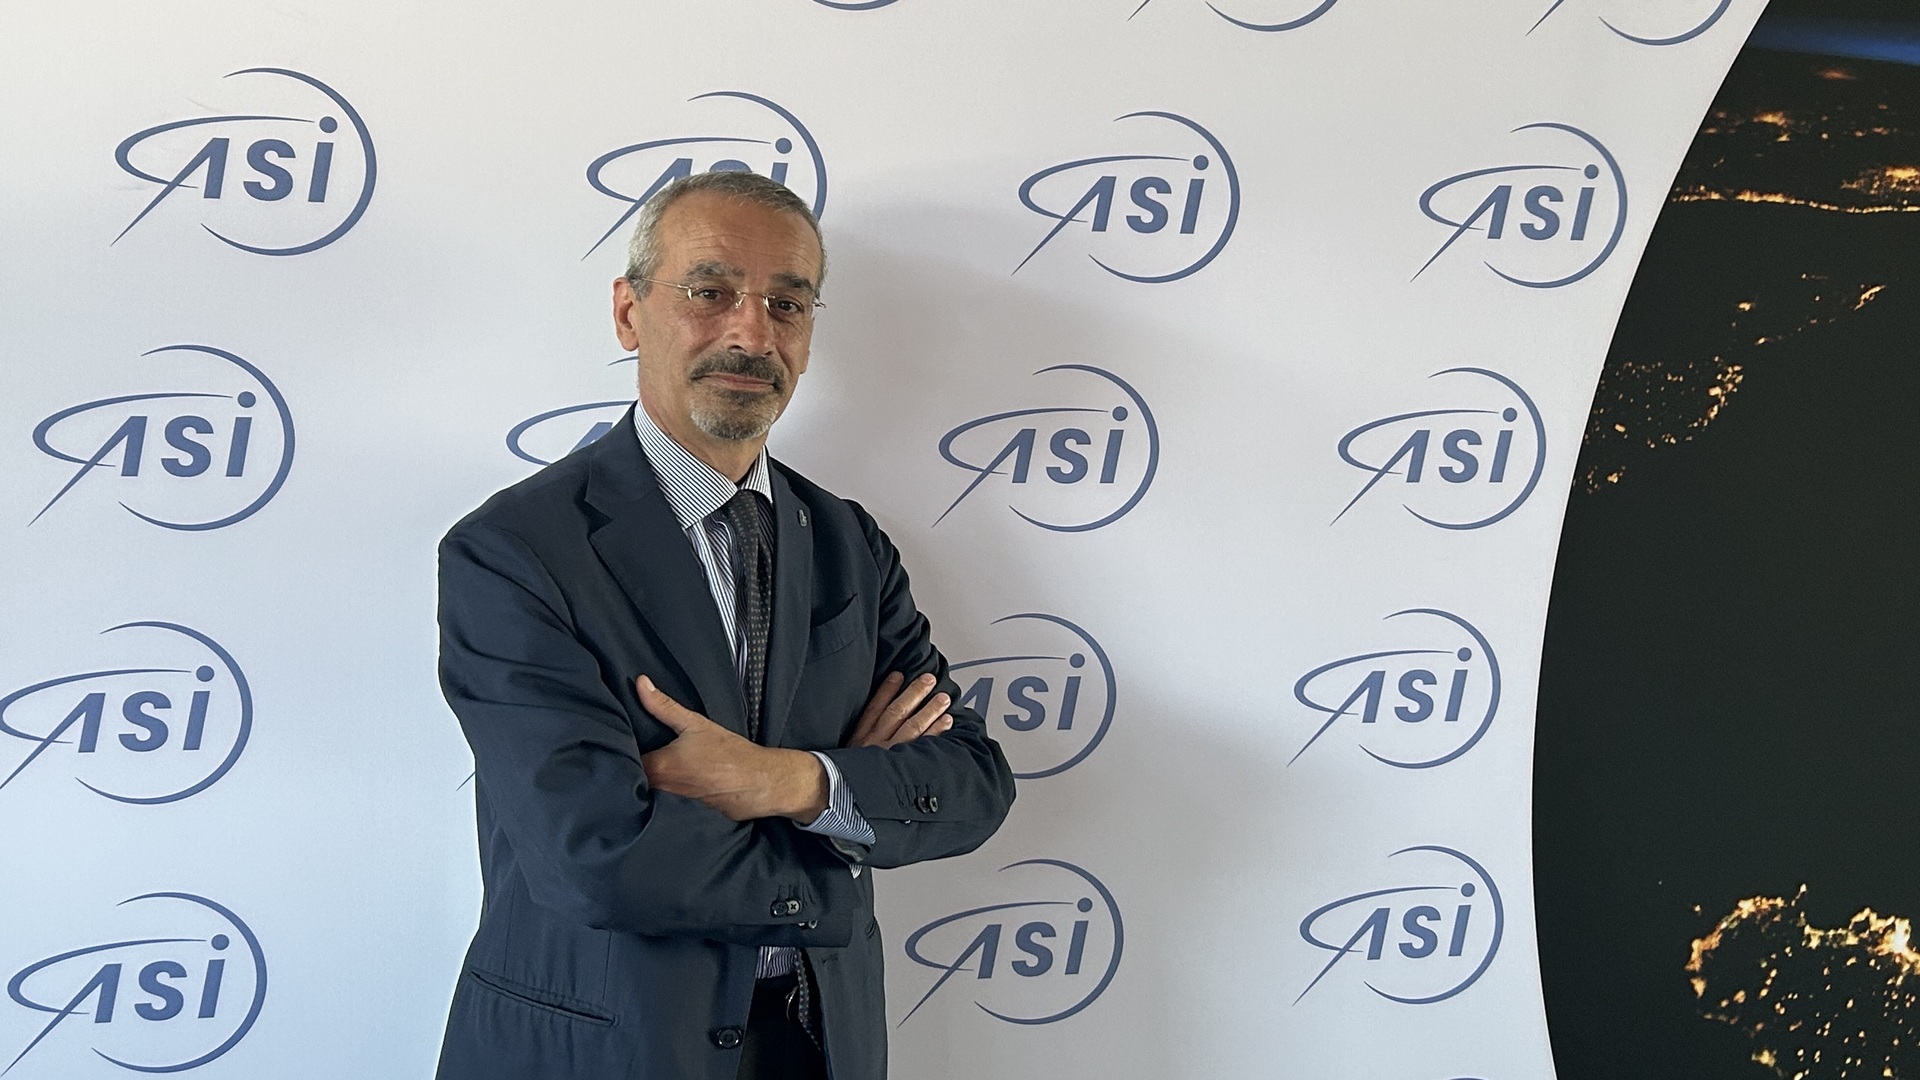 Il nuovo presidente dell’Agenzia Spaziale Italiana, Teodoro Valente, si è insediato